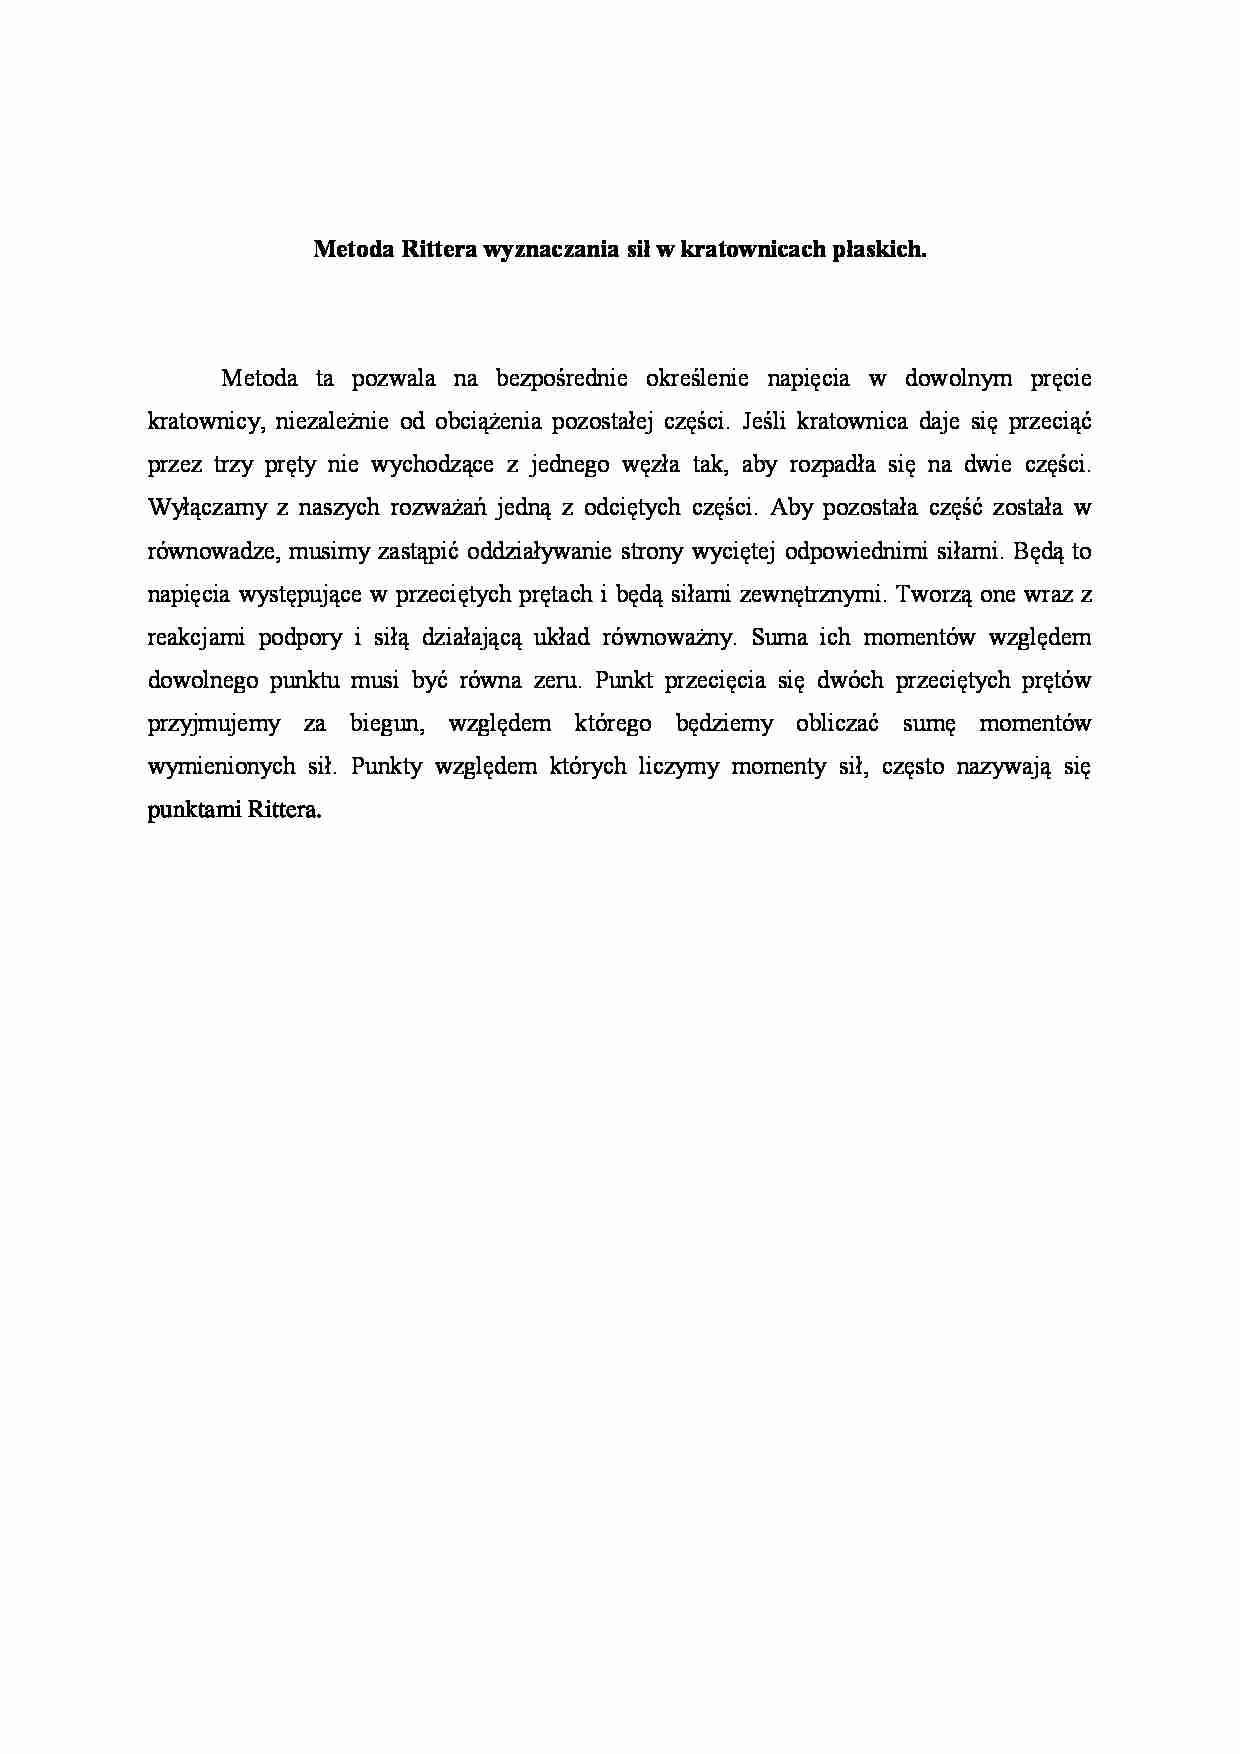 Metoda Rittera wyznaczania sił w kratownicach płaskich. - strona 1